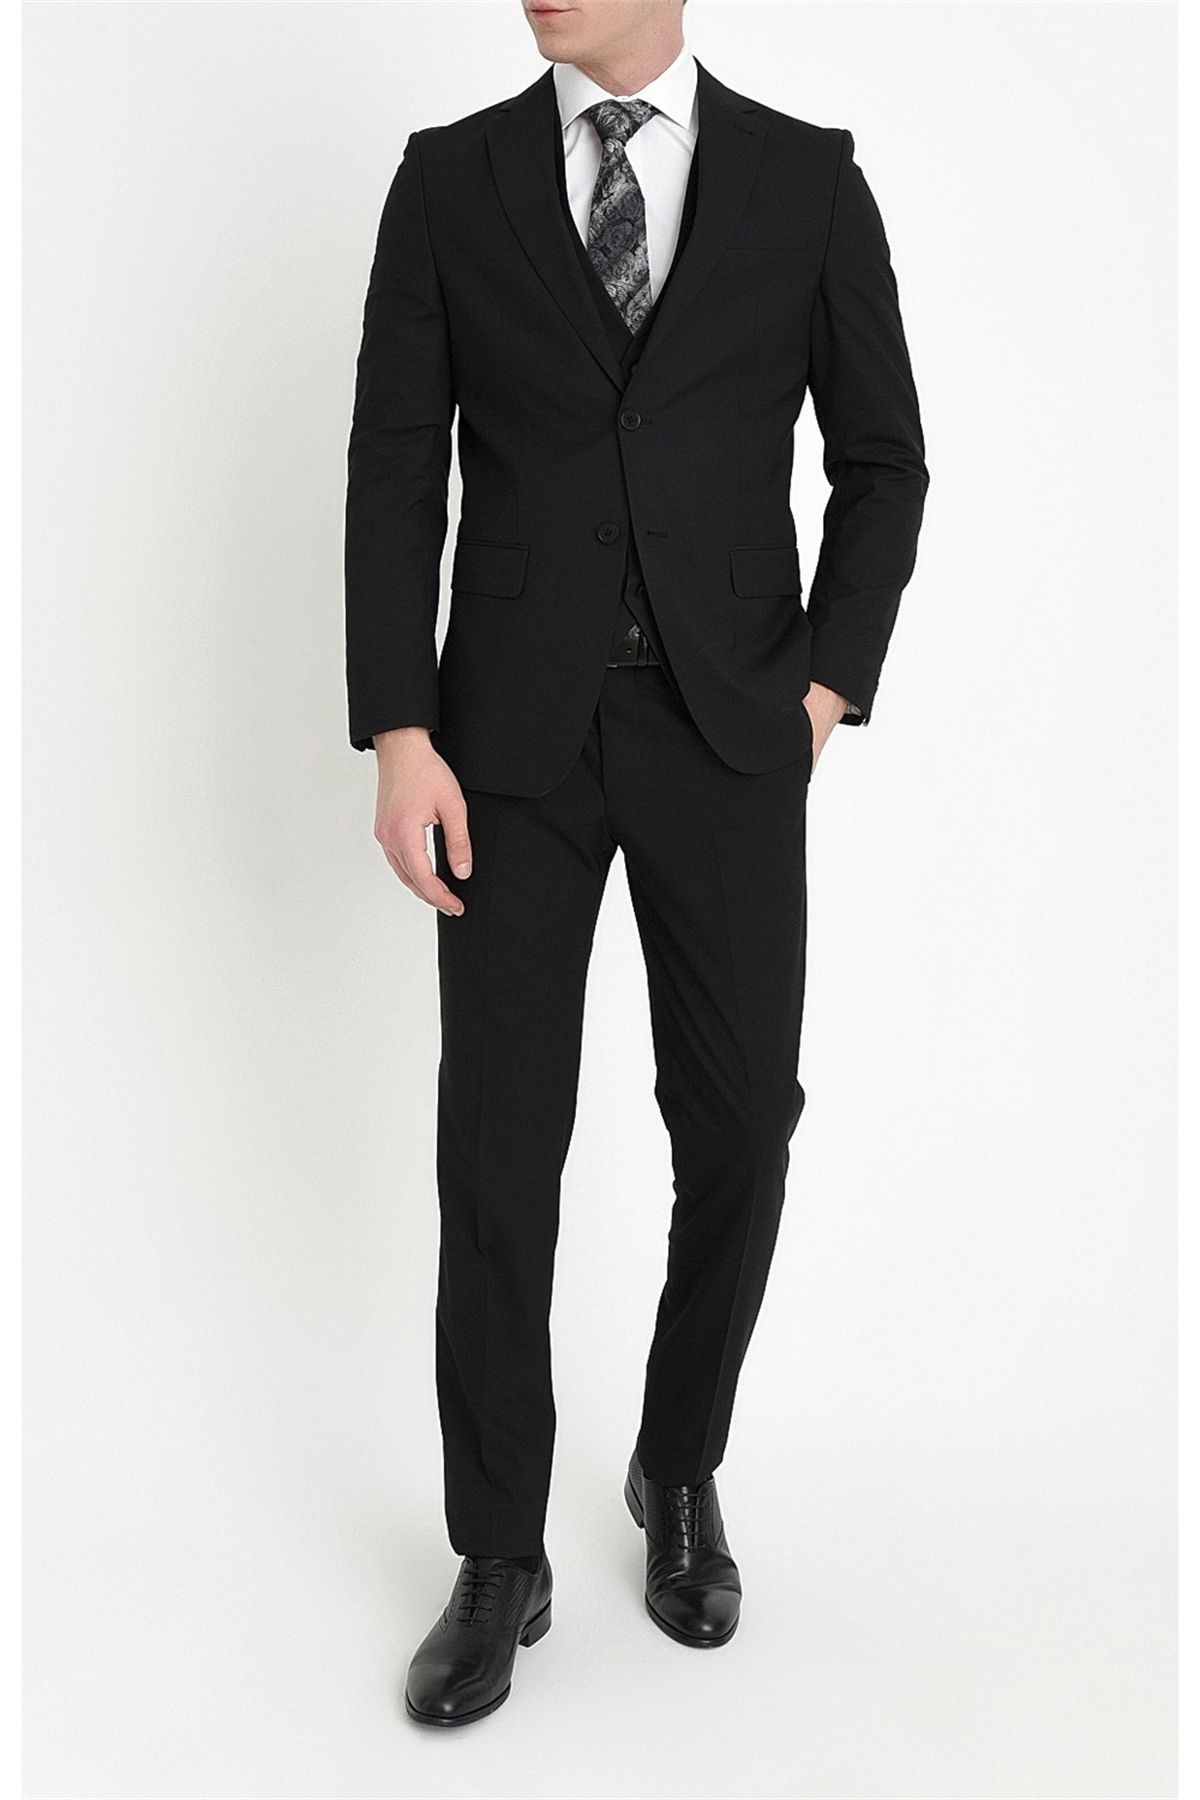 Efor Tk 784 Slim Fit Siyah Klasik Takım Elbise